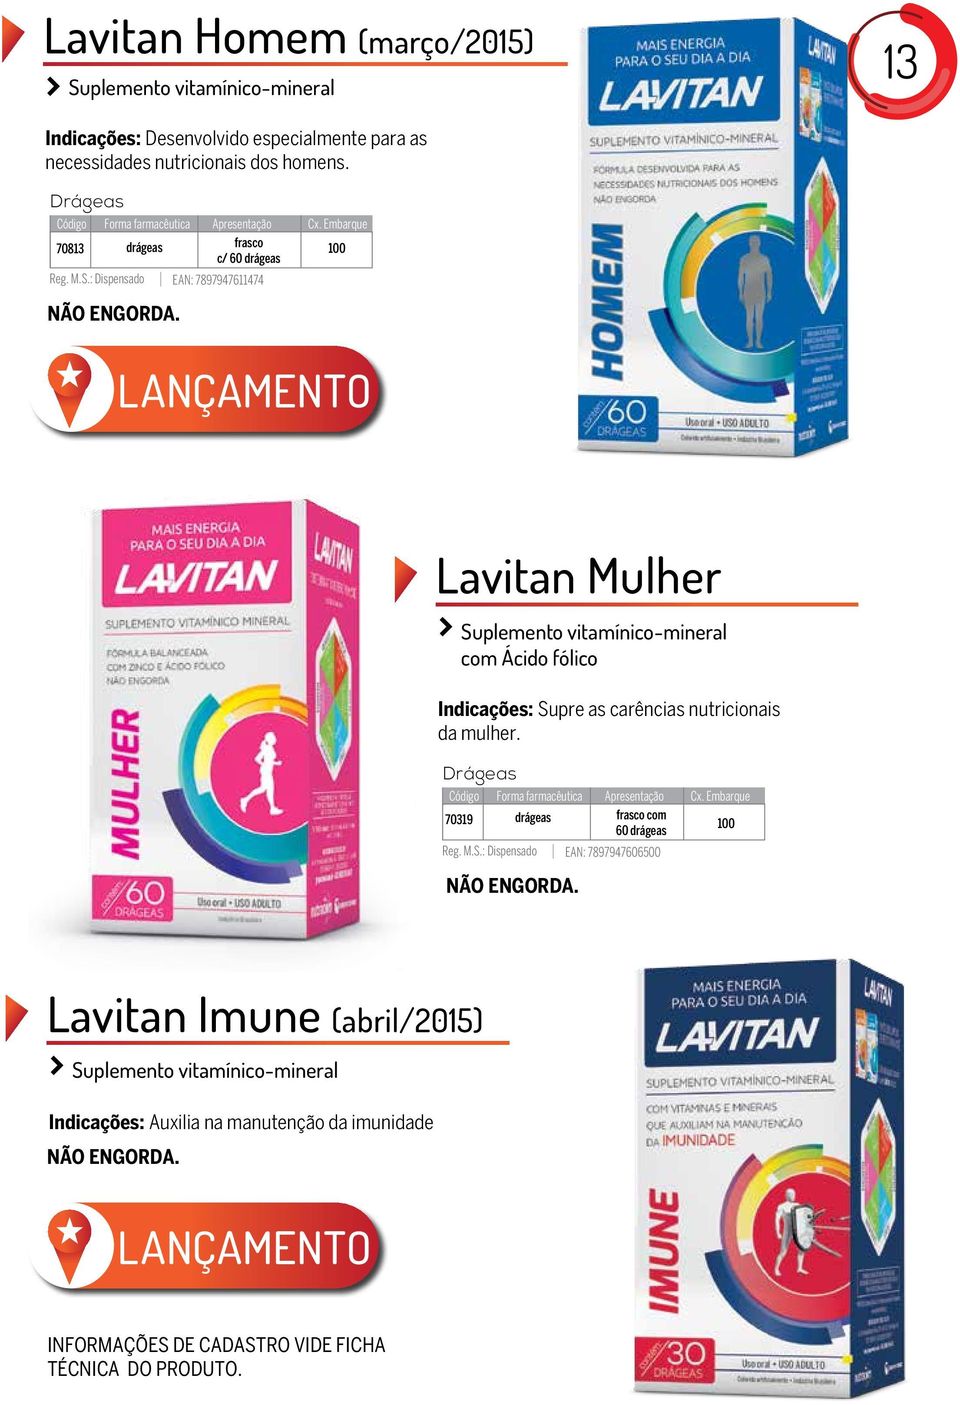 LANÇAMENTO Lavitan Mulher Suplemento vitamínico-mineral com Ácido fólico Indicações: Supre as carências nutricionais da mulher.